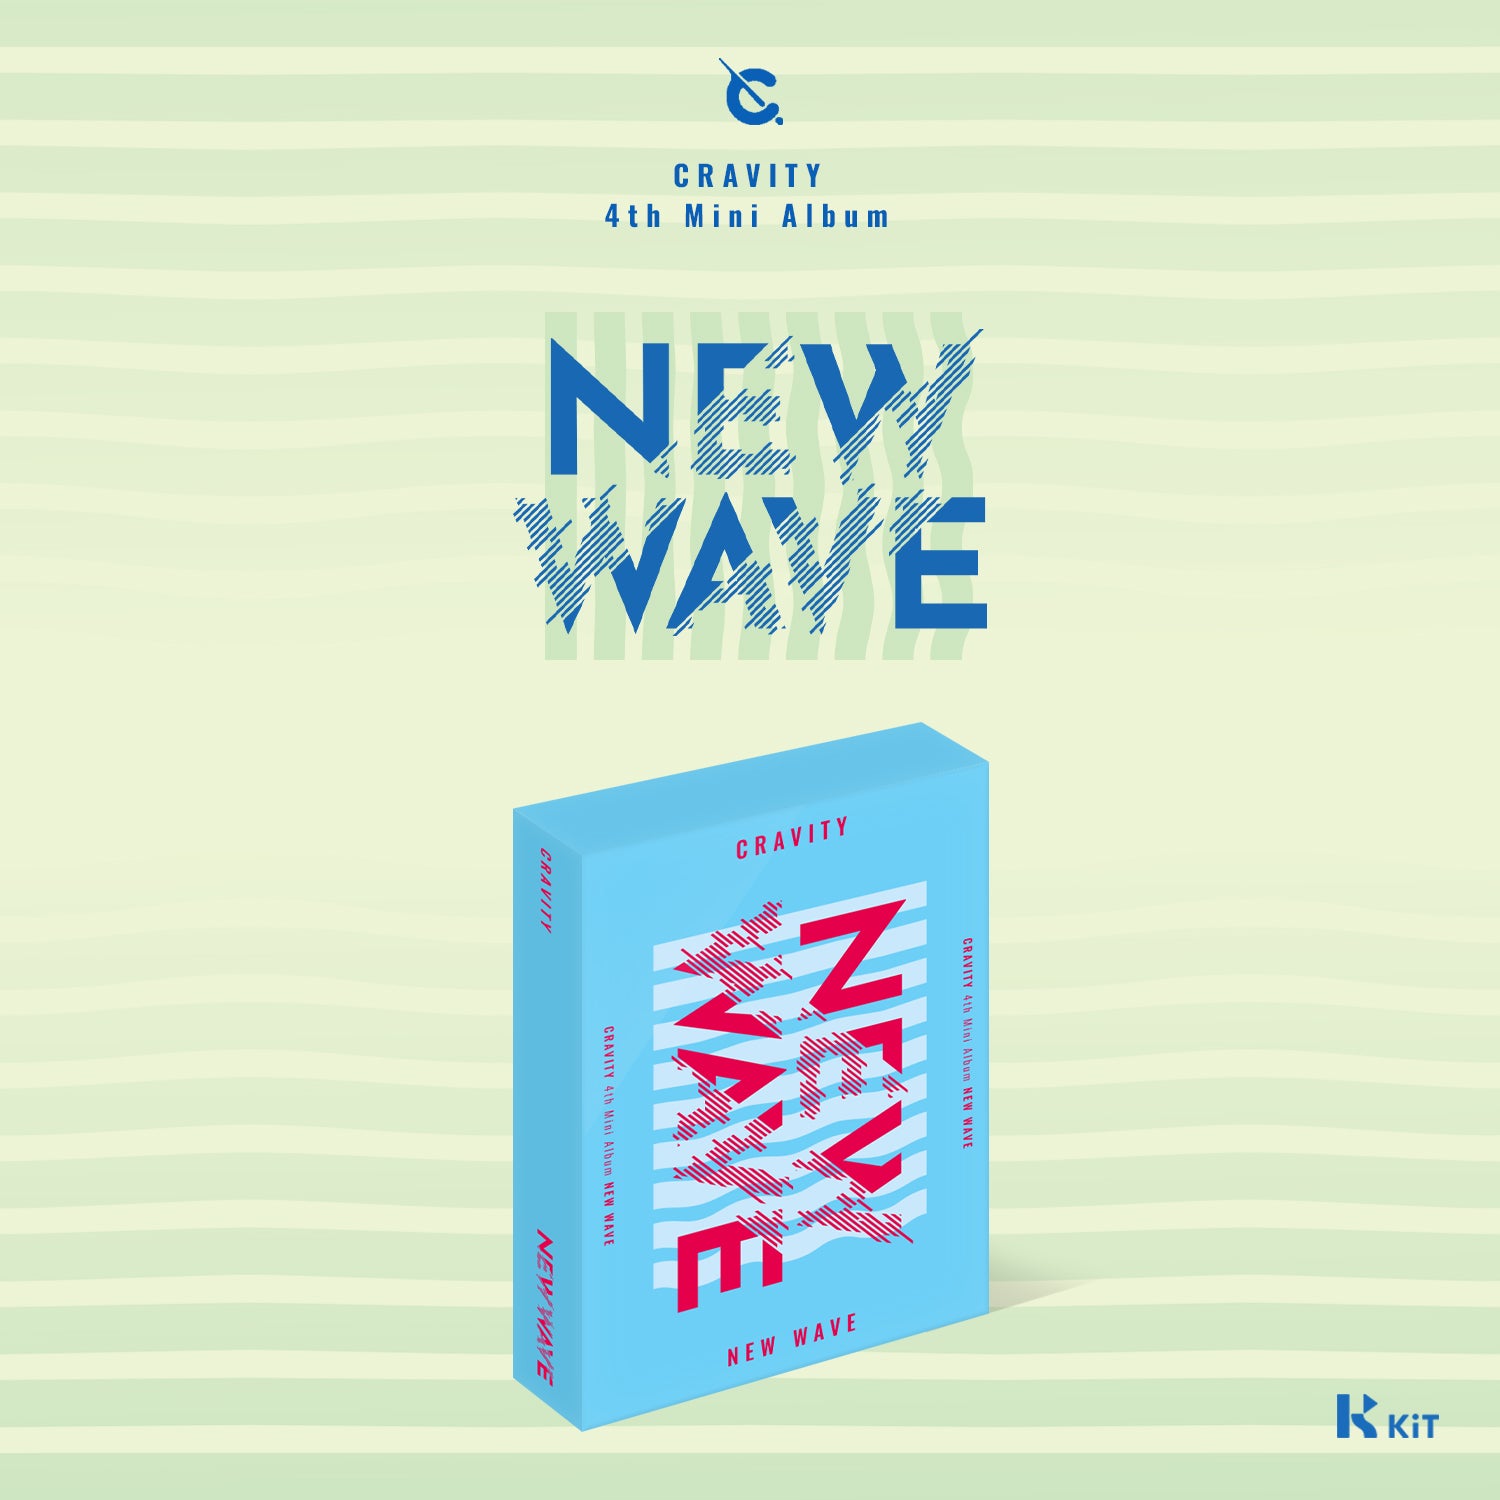 CRAVITY - NEW WAVE (KiT ALBUM)